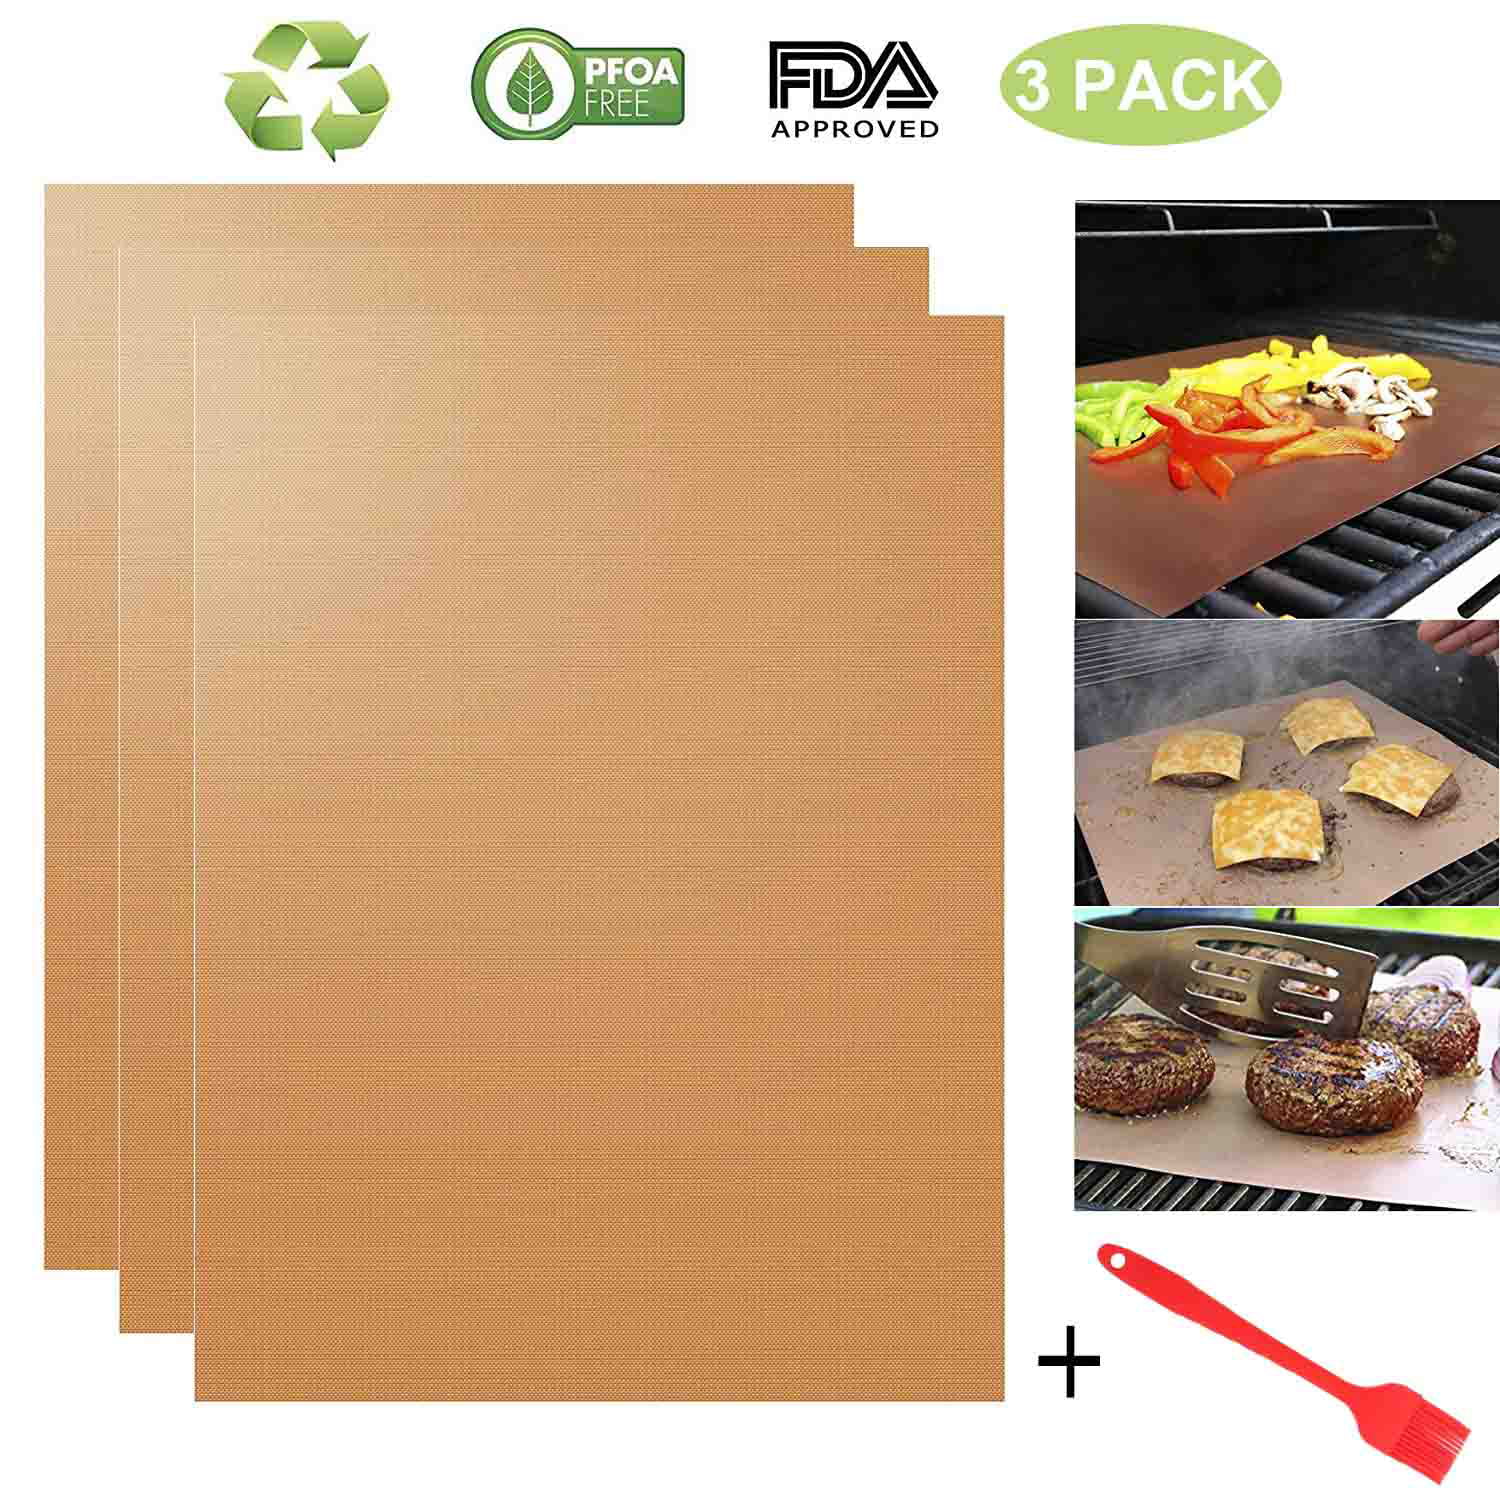 5 Pack BBQ Grill Mats Non-Stick Baking Mat Copper Bake Cooking Sheet Teflon Fibe 